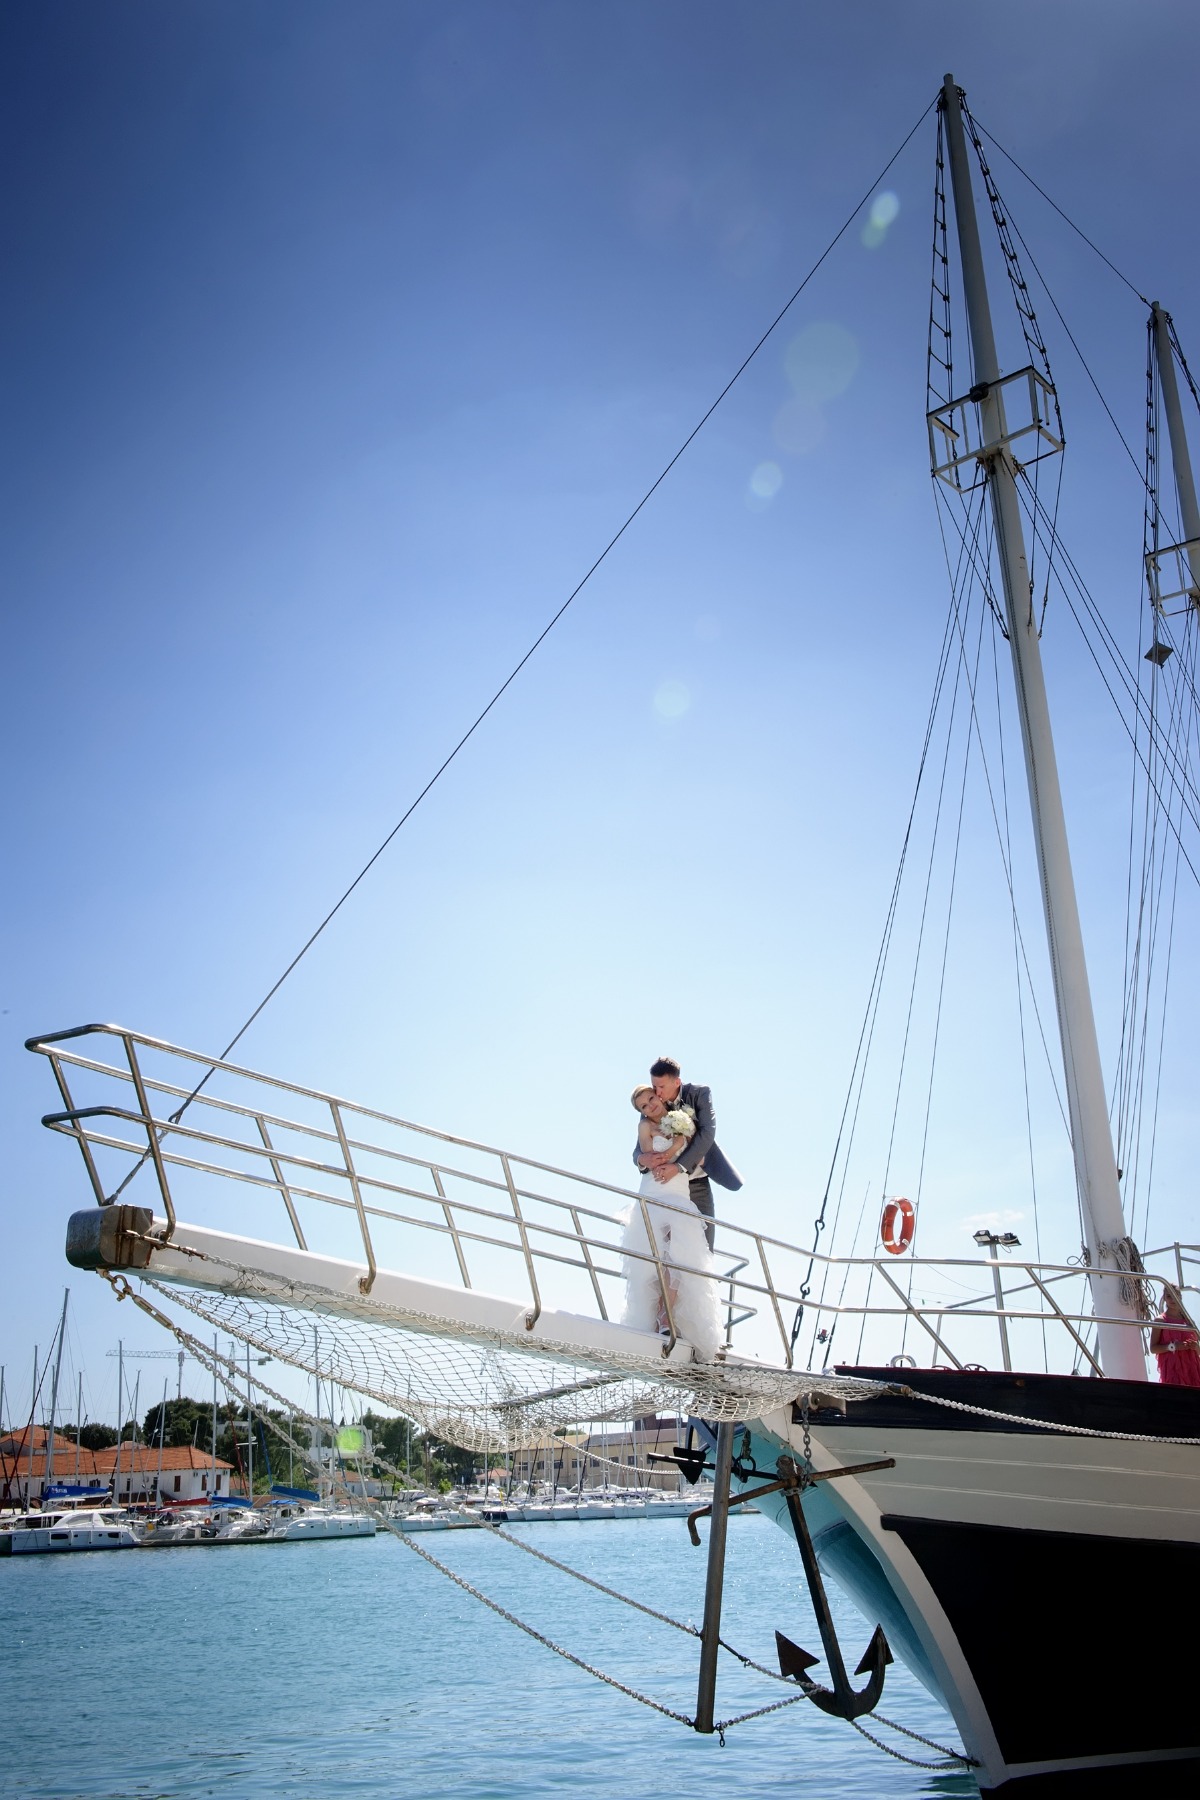 Yacht Wedding in Croatia â New Trend in a Hot Destination